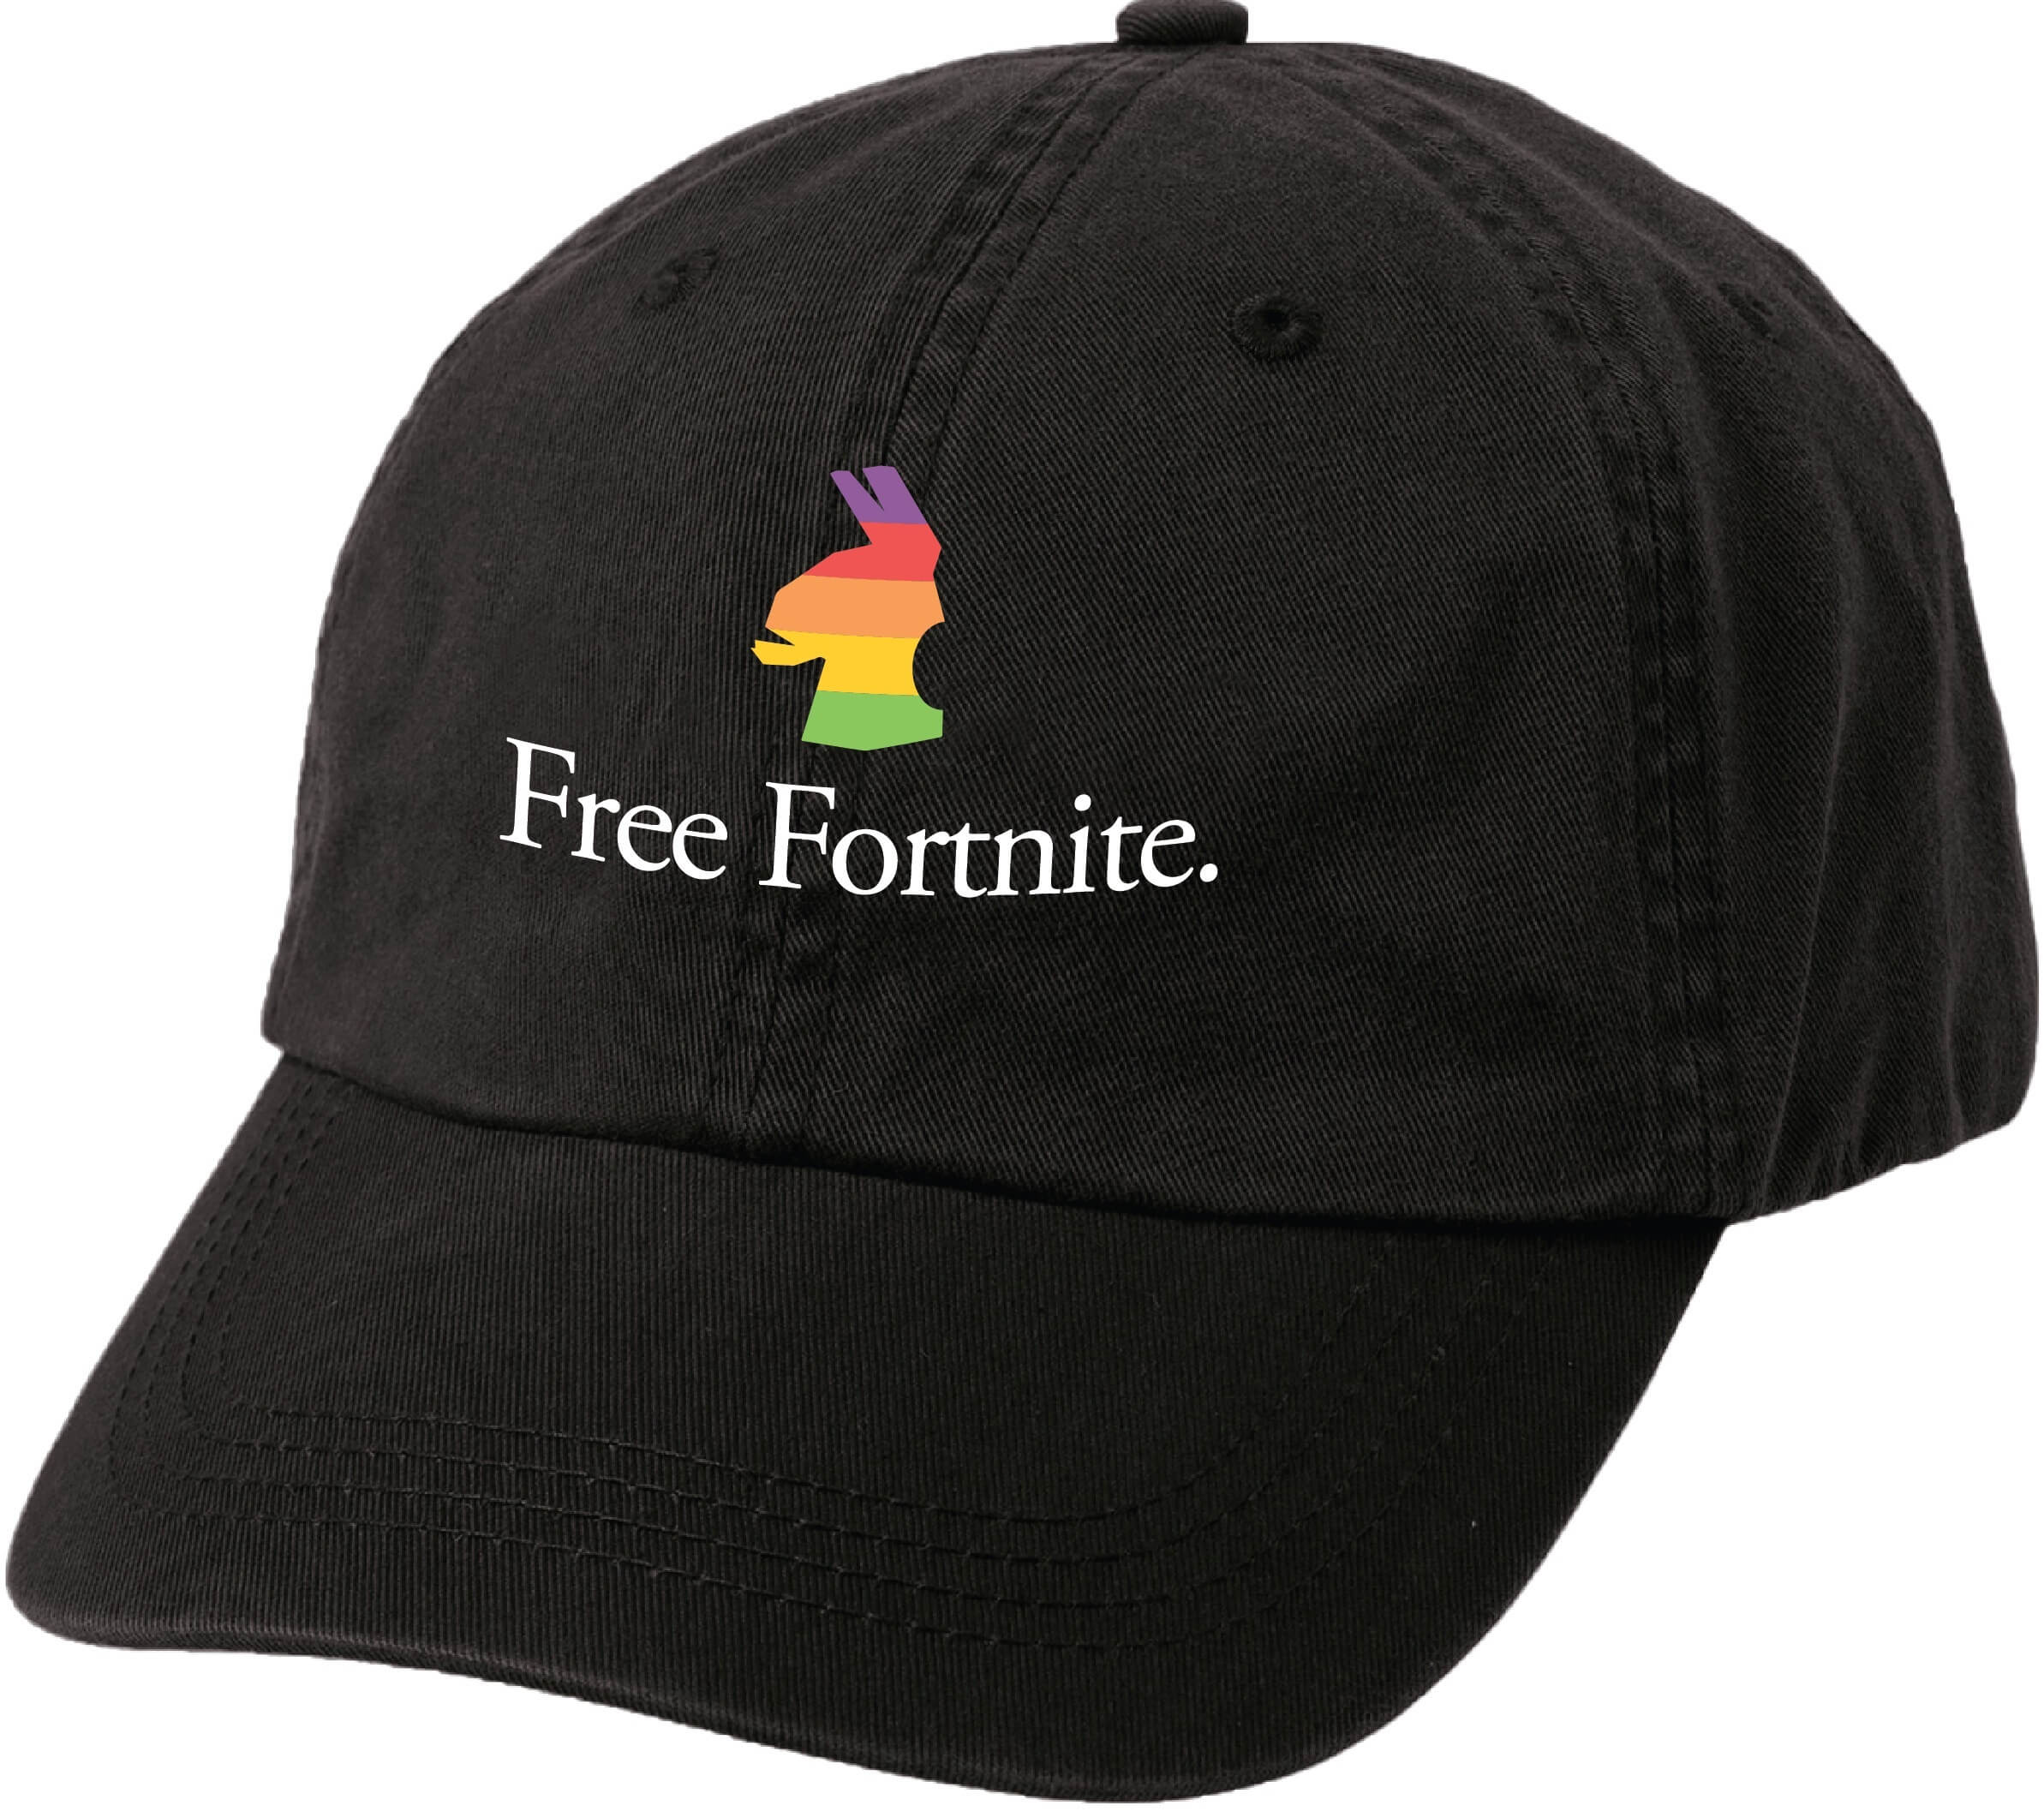 111115-freefortnite-adjustable-hat-2386x